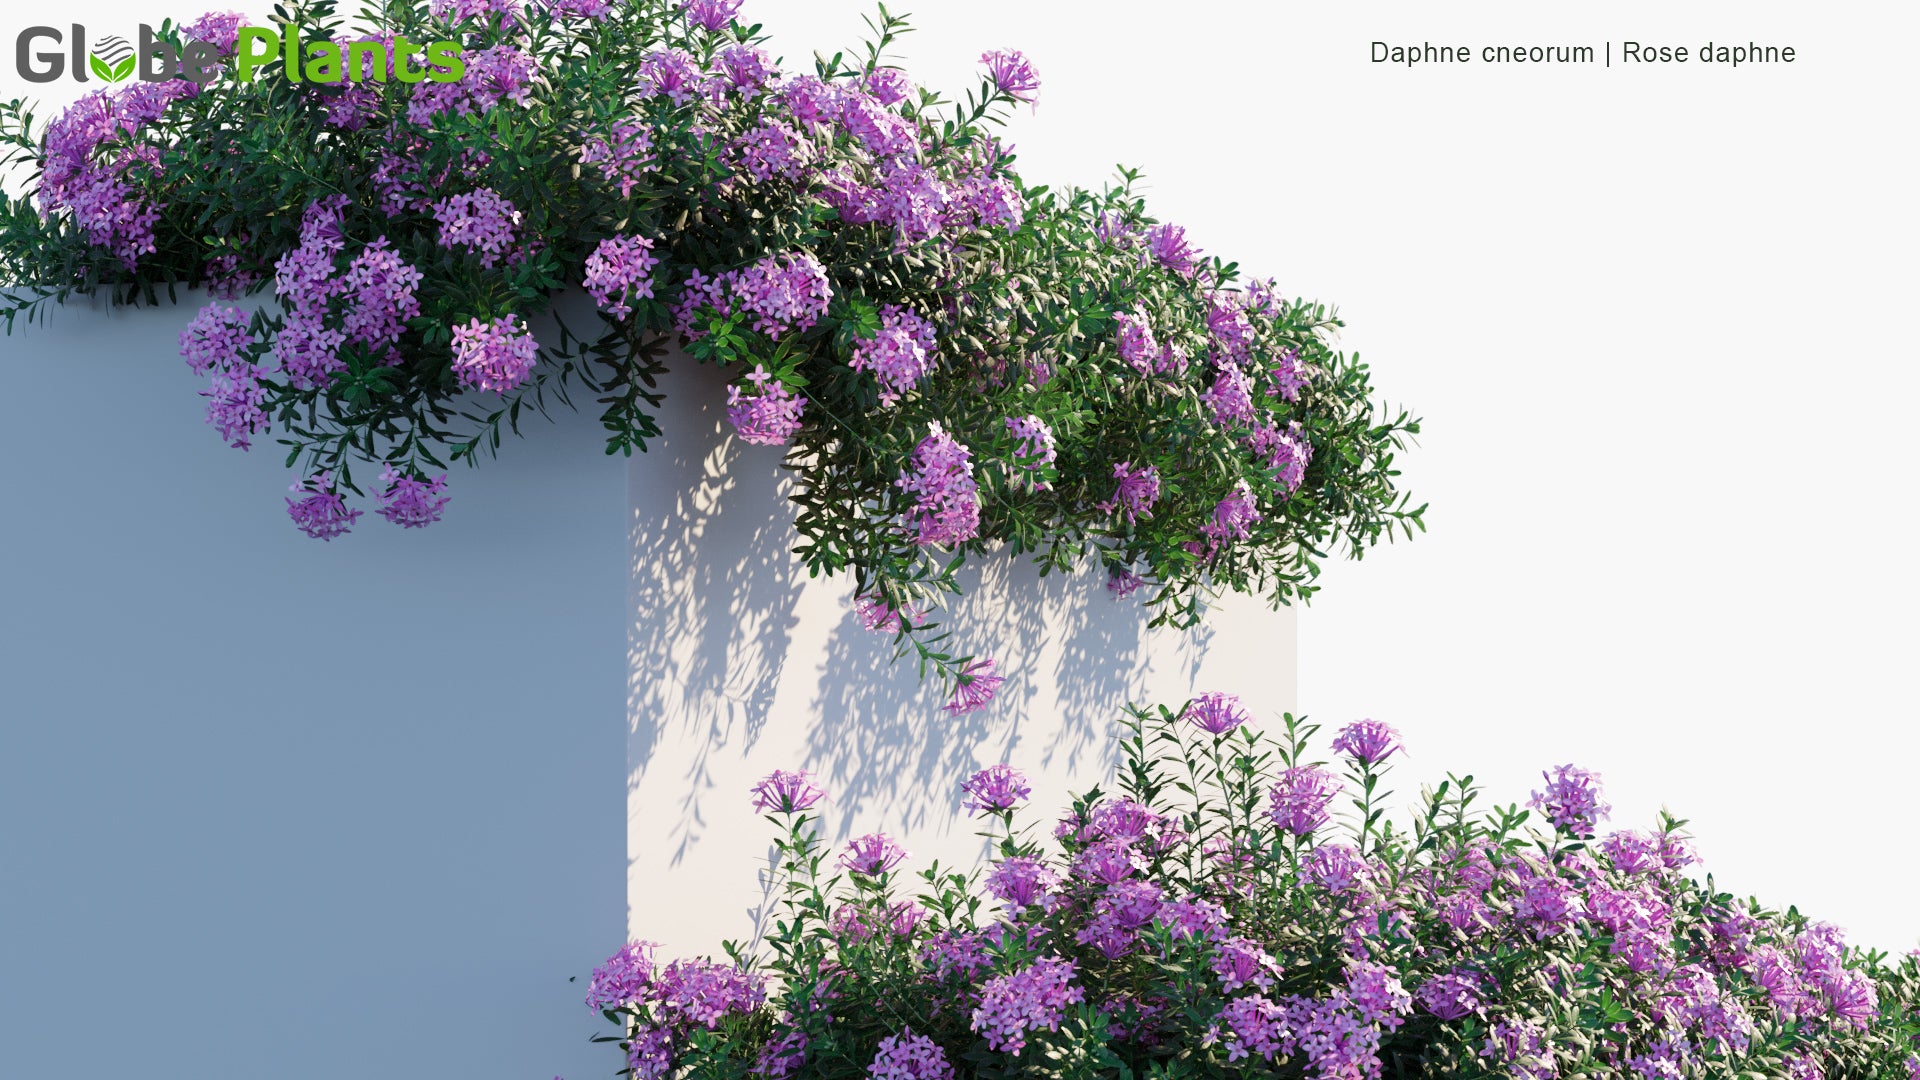 Daphne Cneorum - Garland Flower, Rose Daphne